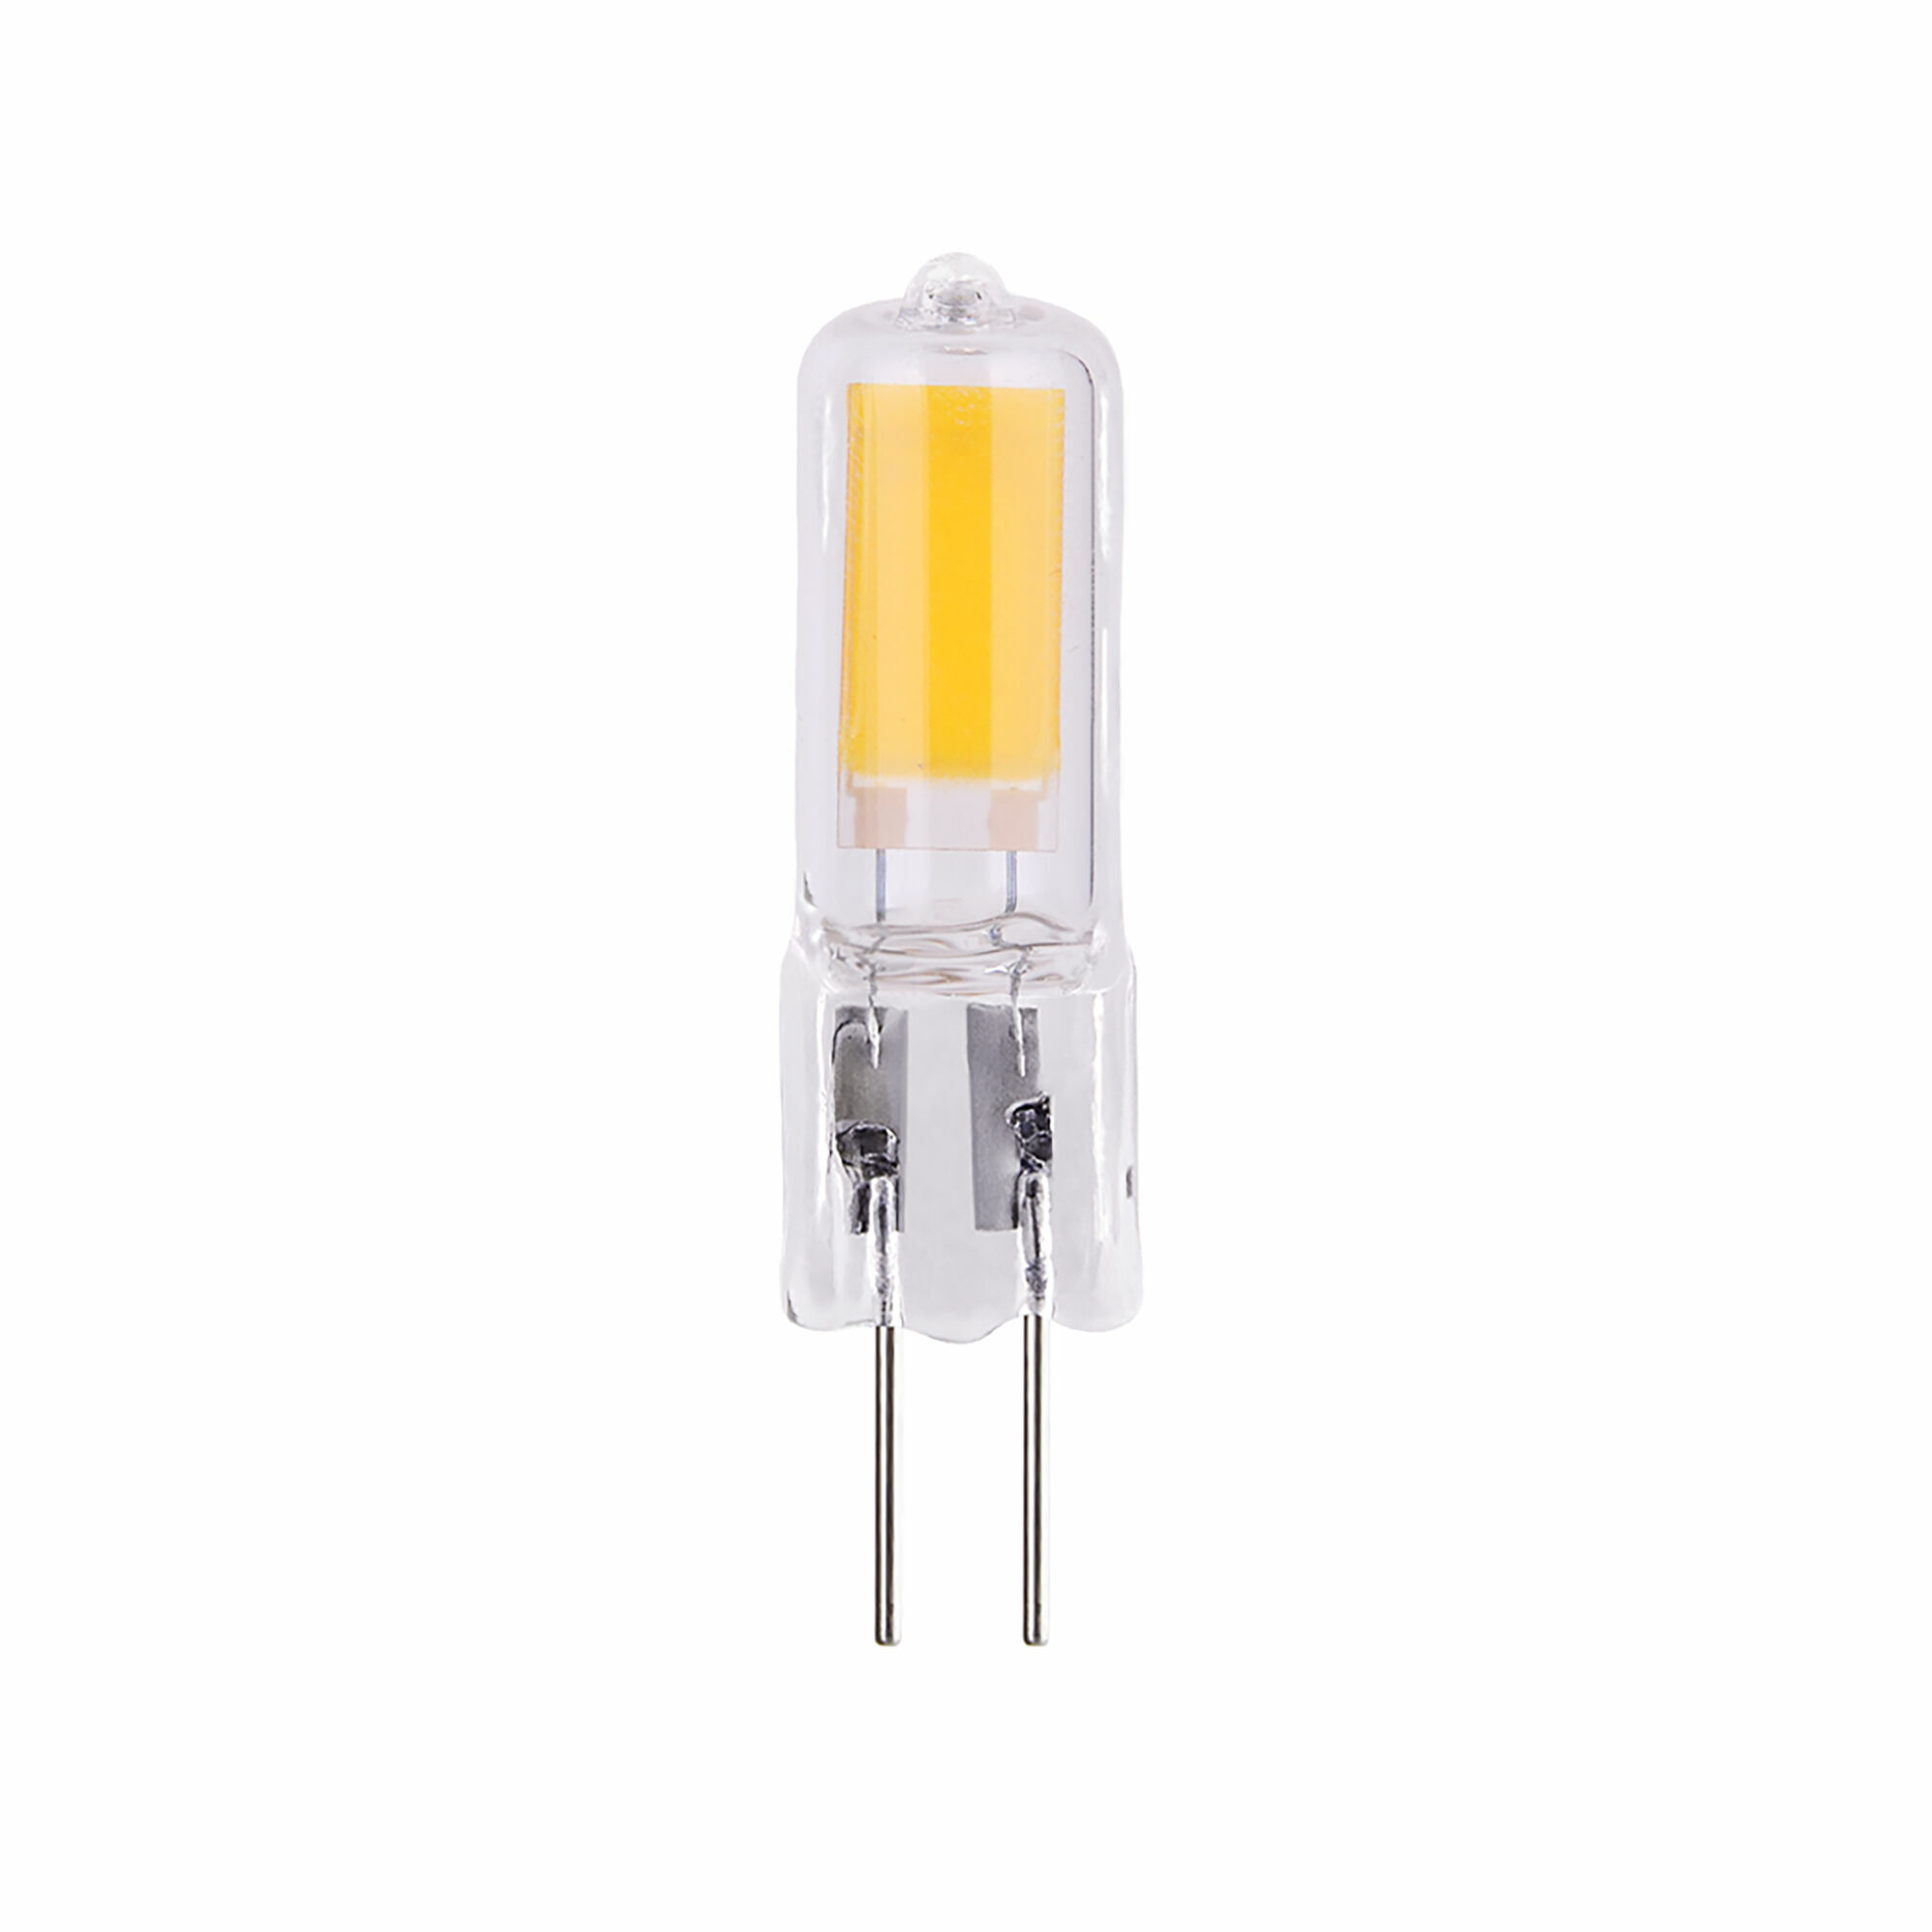 Светодиодная лампа G4 LED 5W 220V 3300K стекло Elektrostandard  BLG419. Фото 2